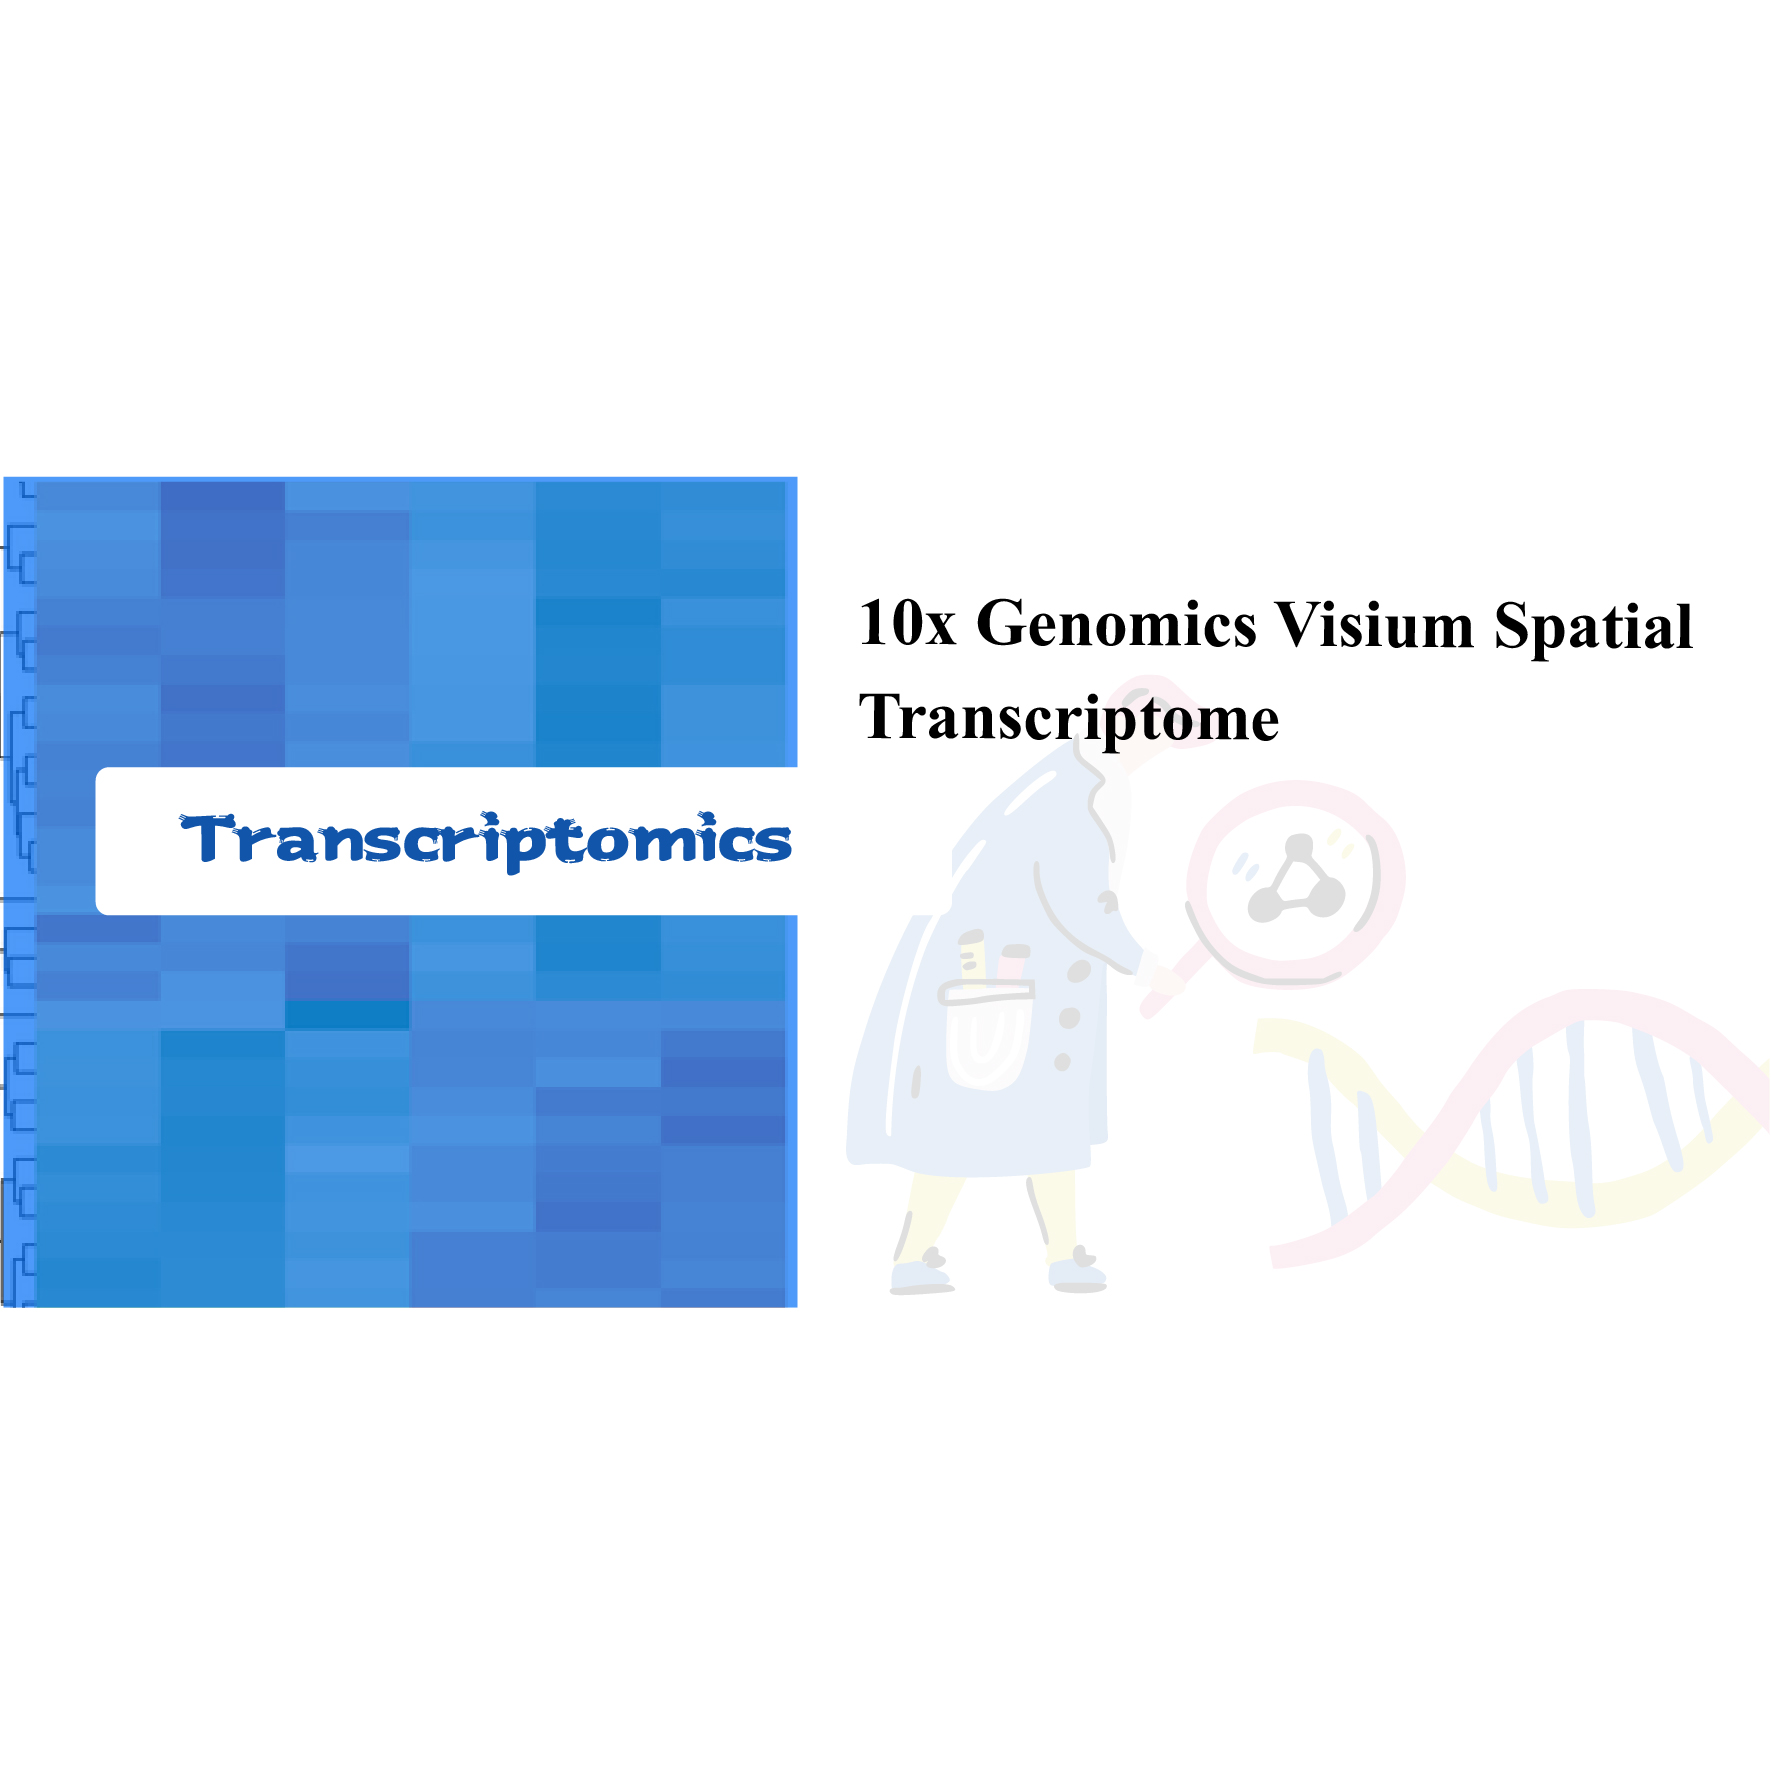 10x Genomics Visium Spatial Transcriptome Featured Image